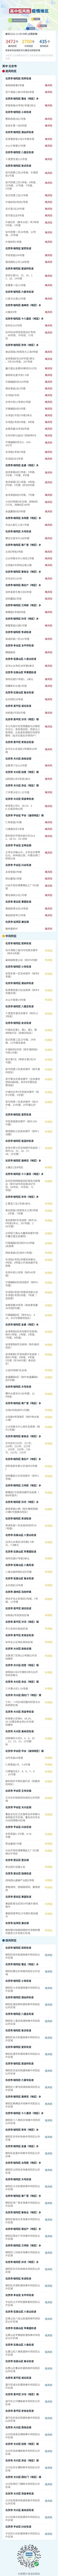 更新！北京现有高中风险区80+75个，涉及区域汇总